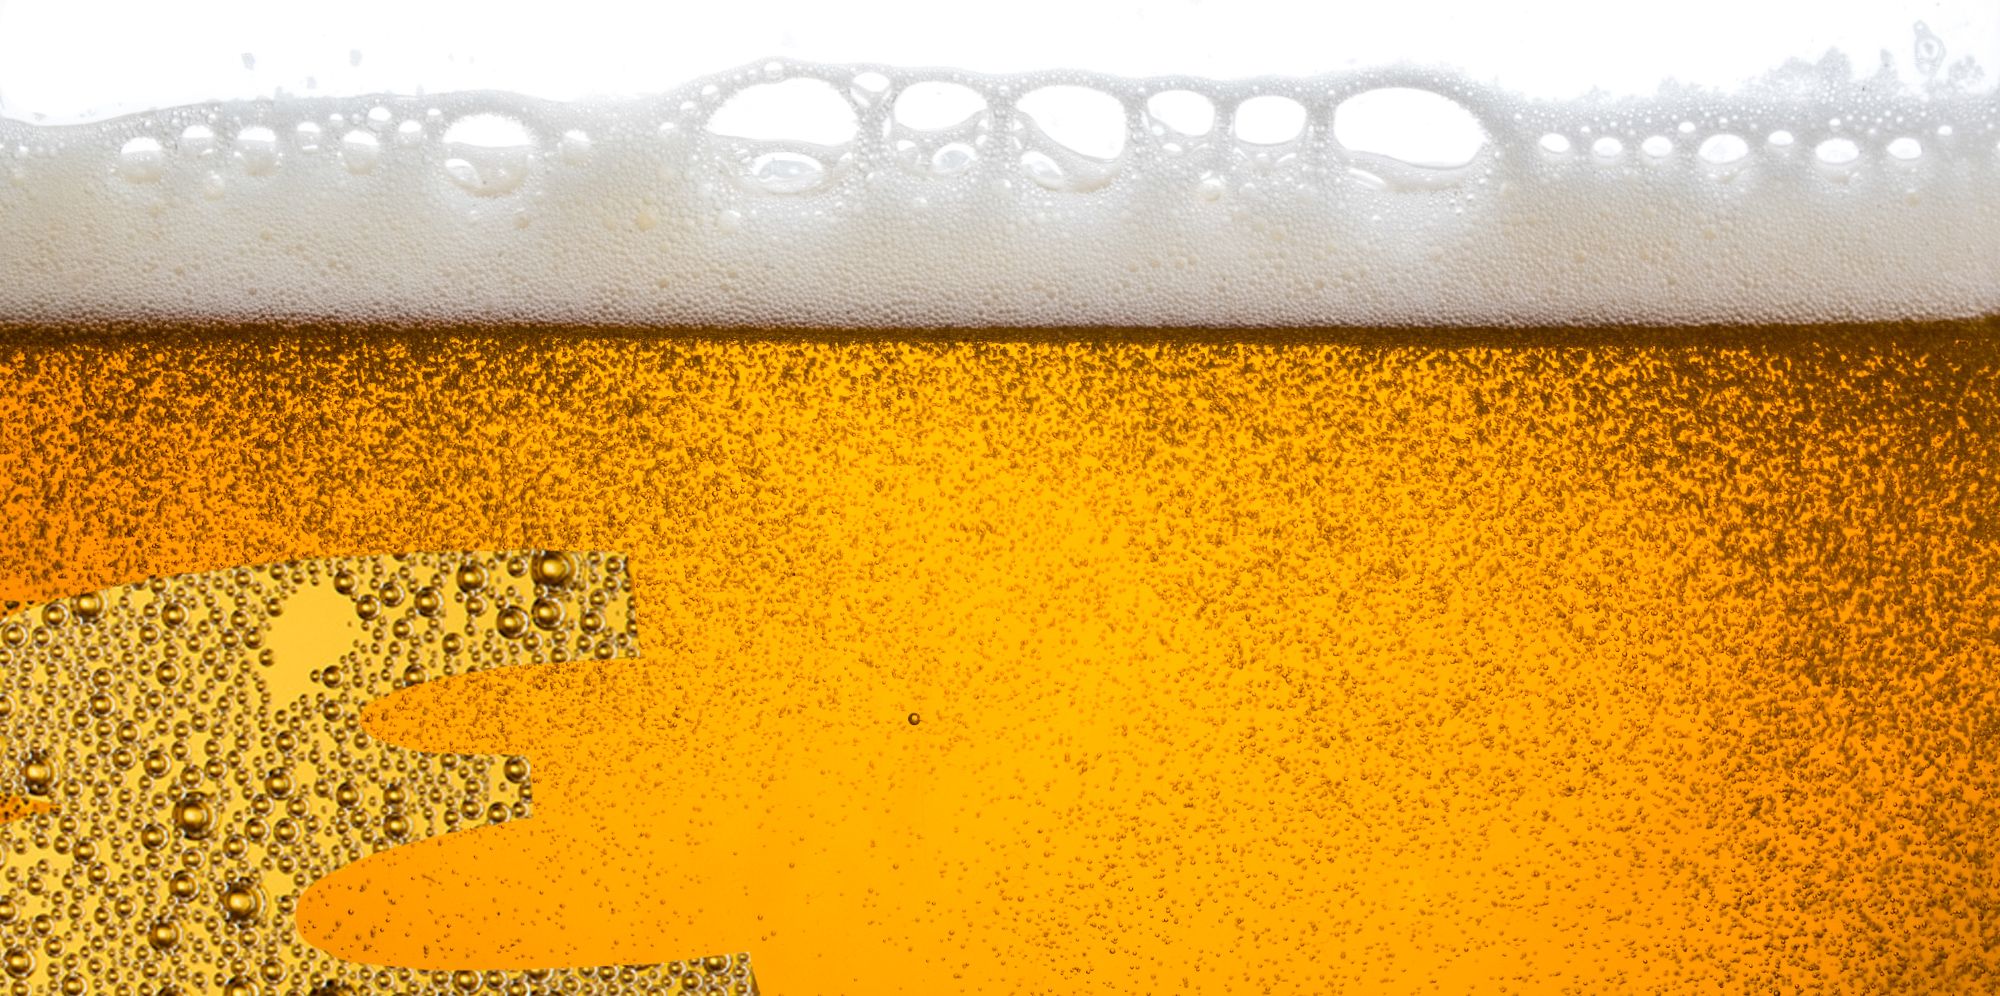 Why We Drink Beer, Beer Flight Boards Target